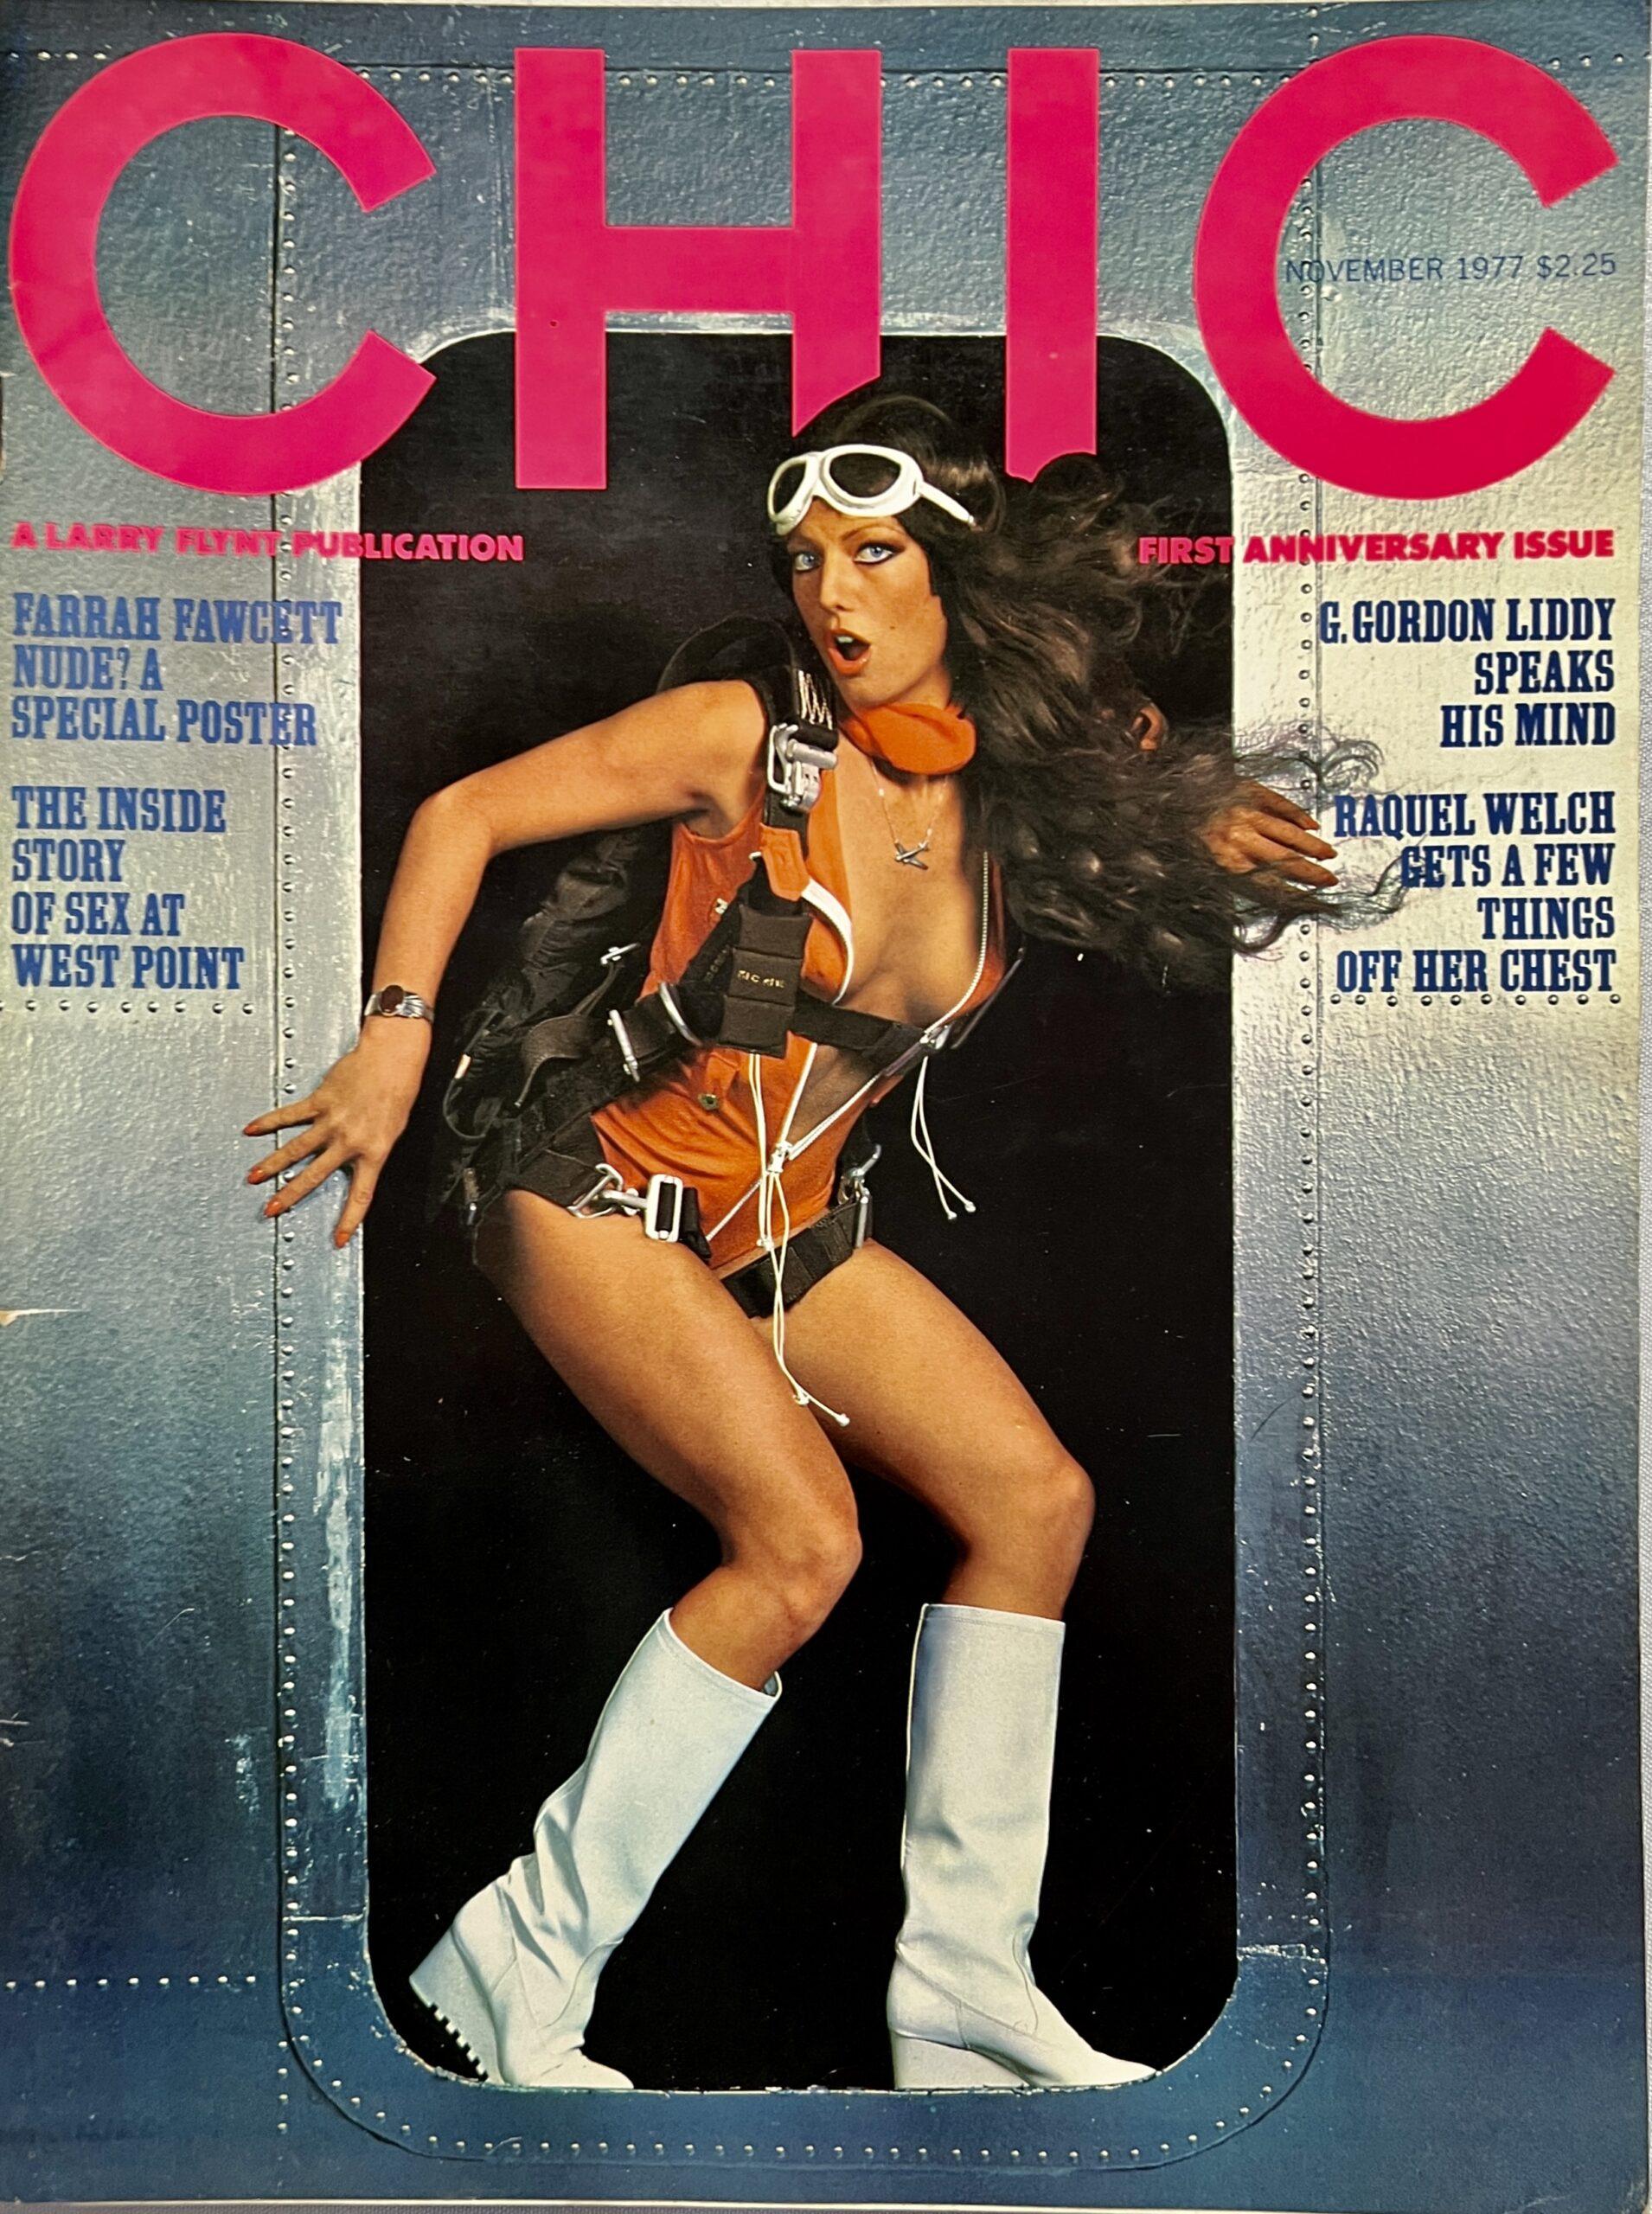 Chic November 1977 *Farrah Fawcett Nude* pic